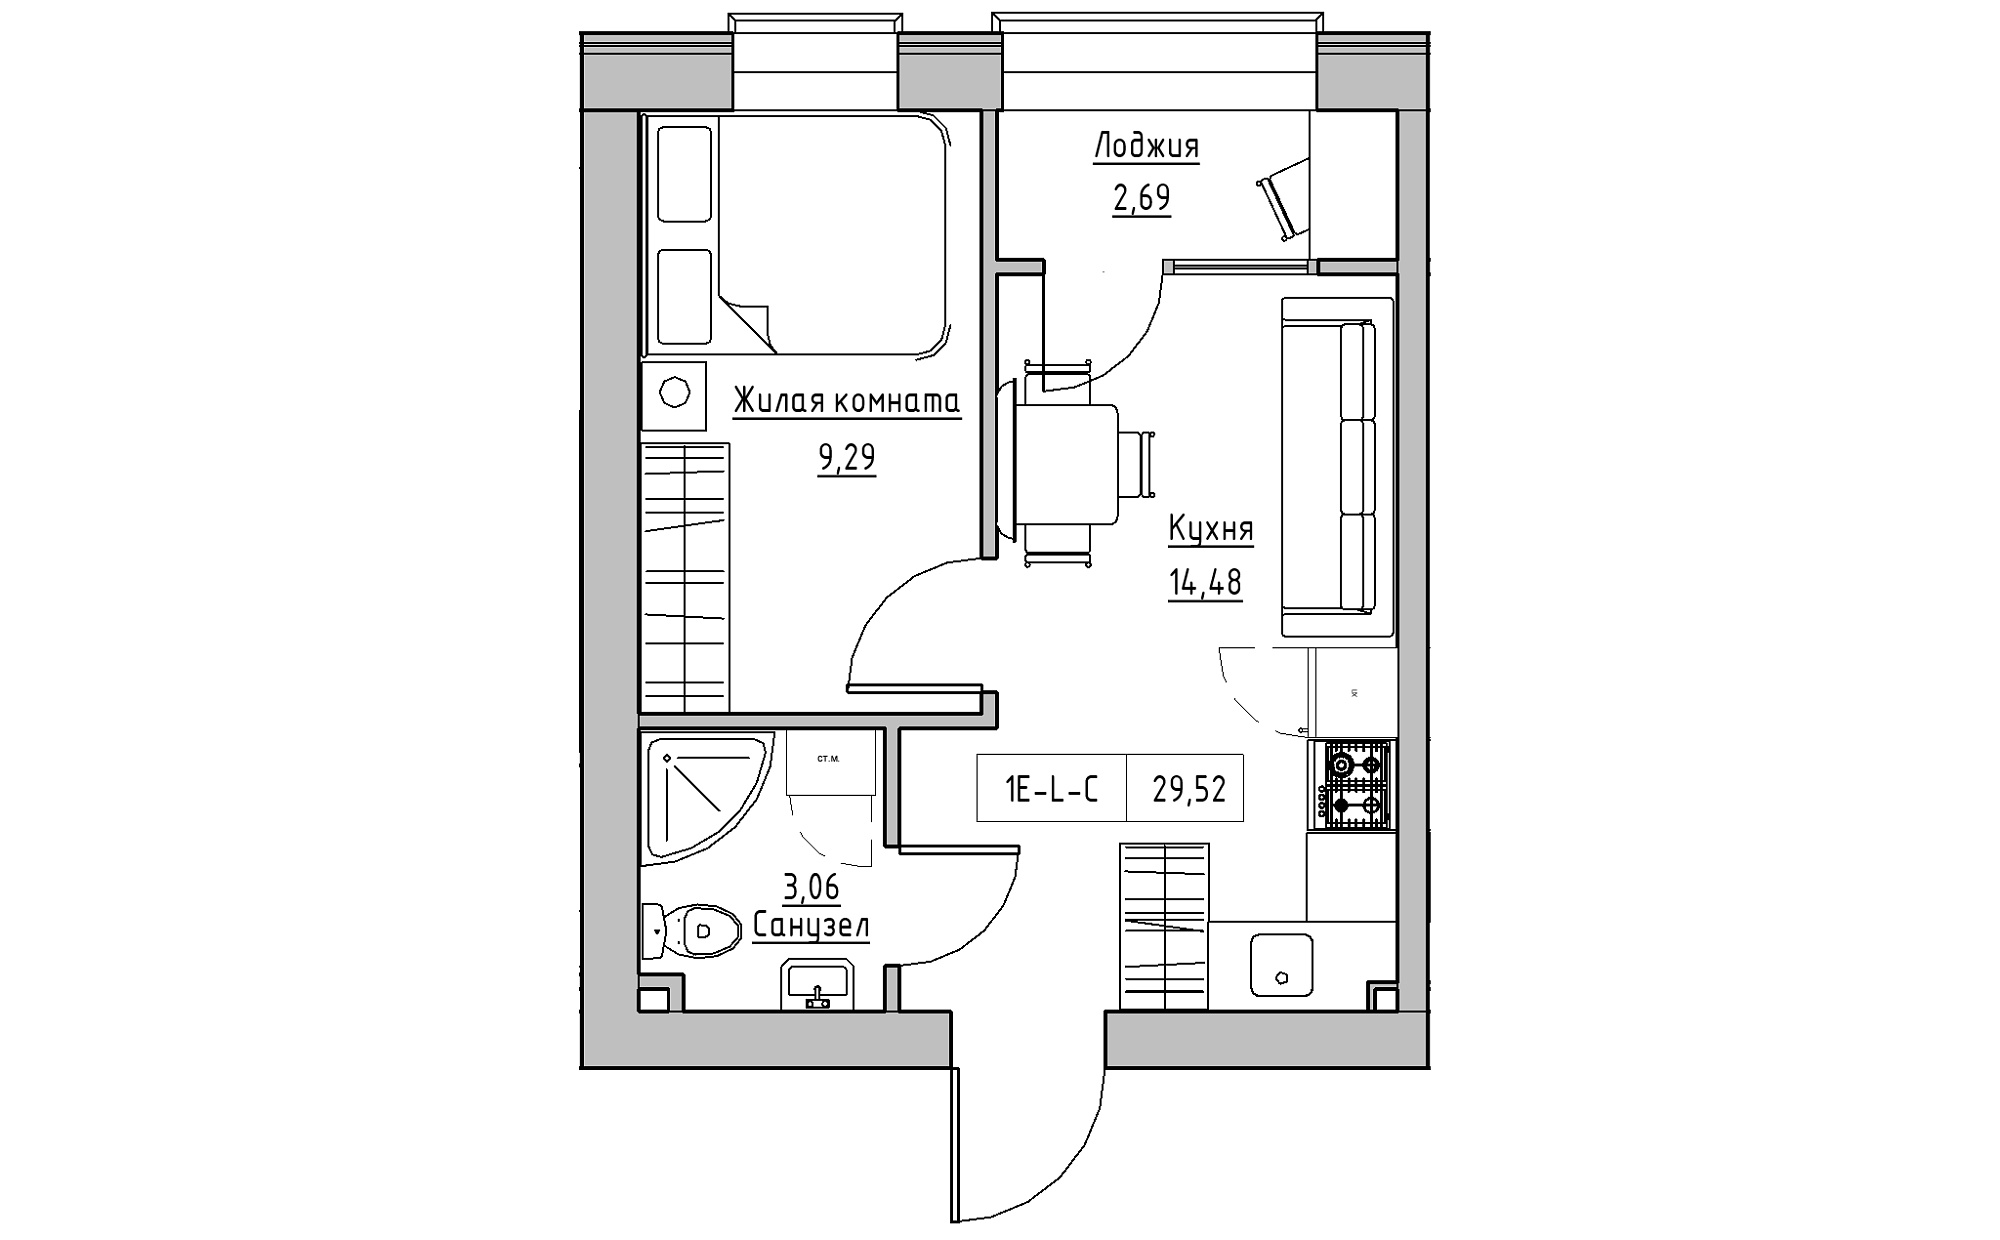 Планировка 1-к квартира площей 29.52м2, KS-022-01/0006.